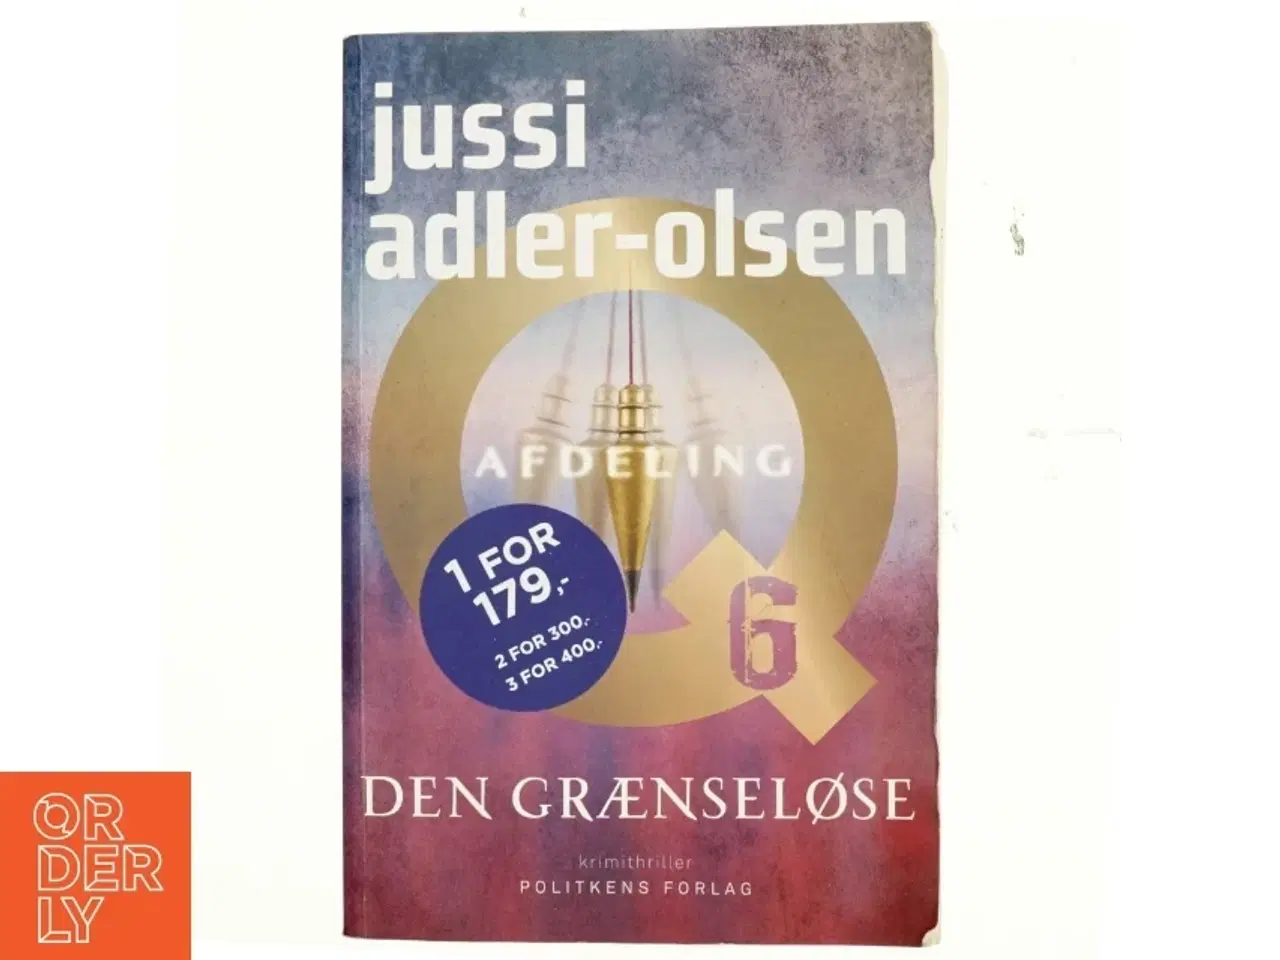 Billede 1 - Den grænseløse : krimithriller af Jussi Adler-Olsen (Bog)